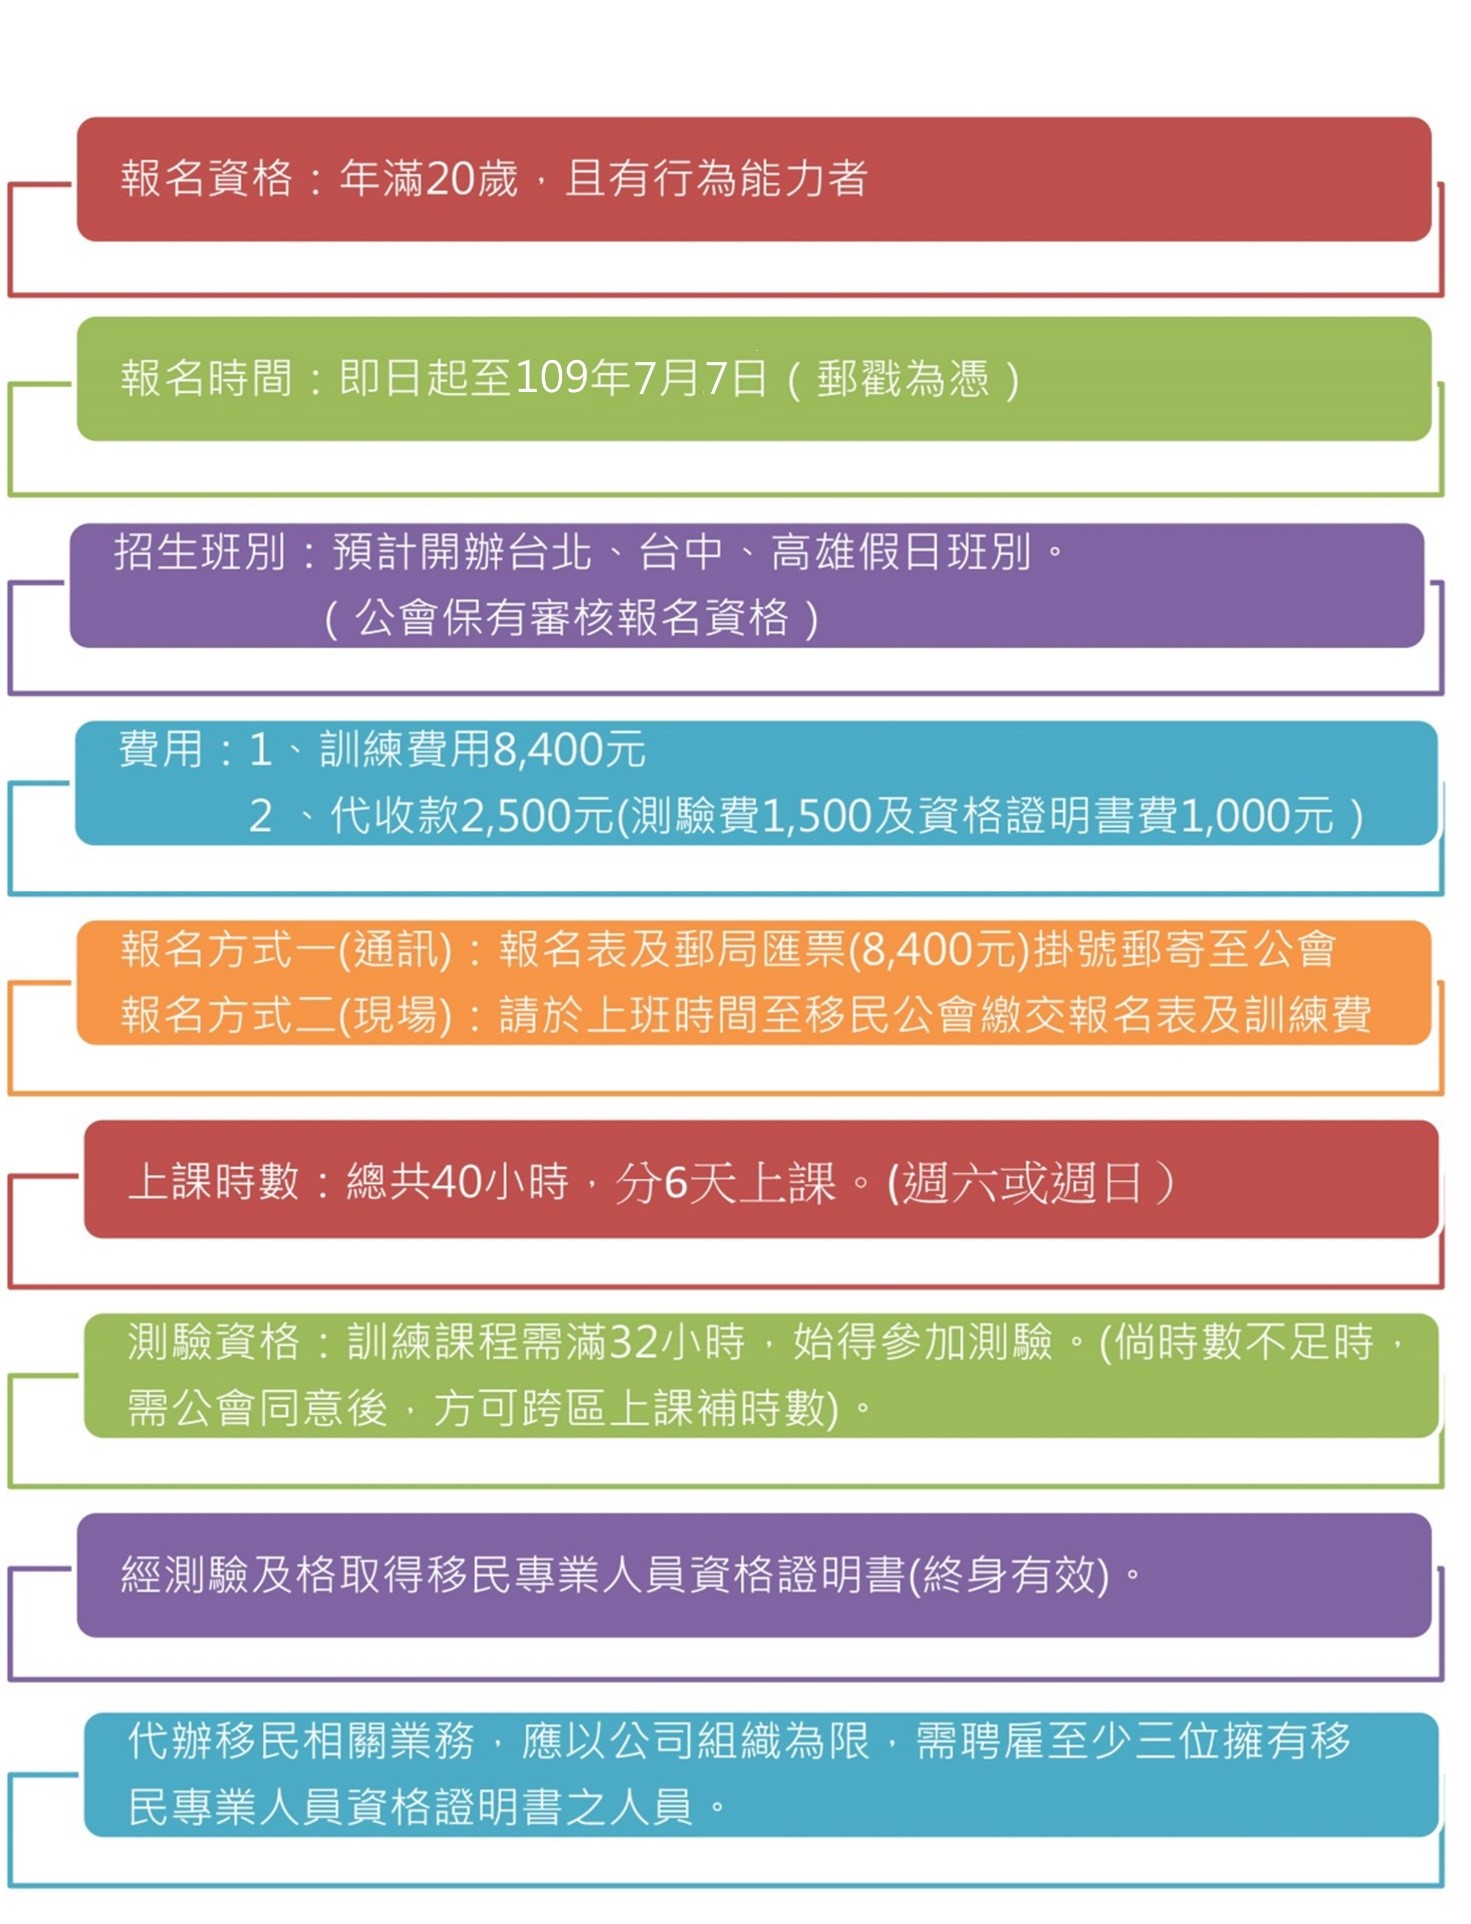 Pelatihan profesional Petugas imigrasi tahun 2020 akan segera dimulai (dari situs web Asosiasi Imigrasi Taiwan)